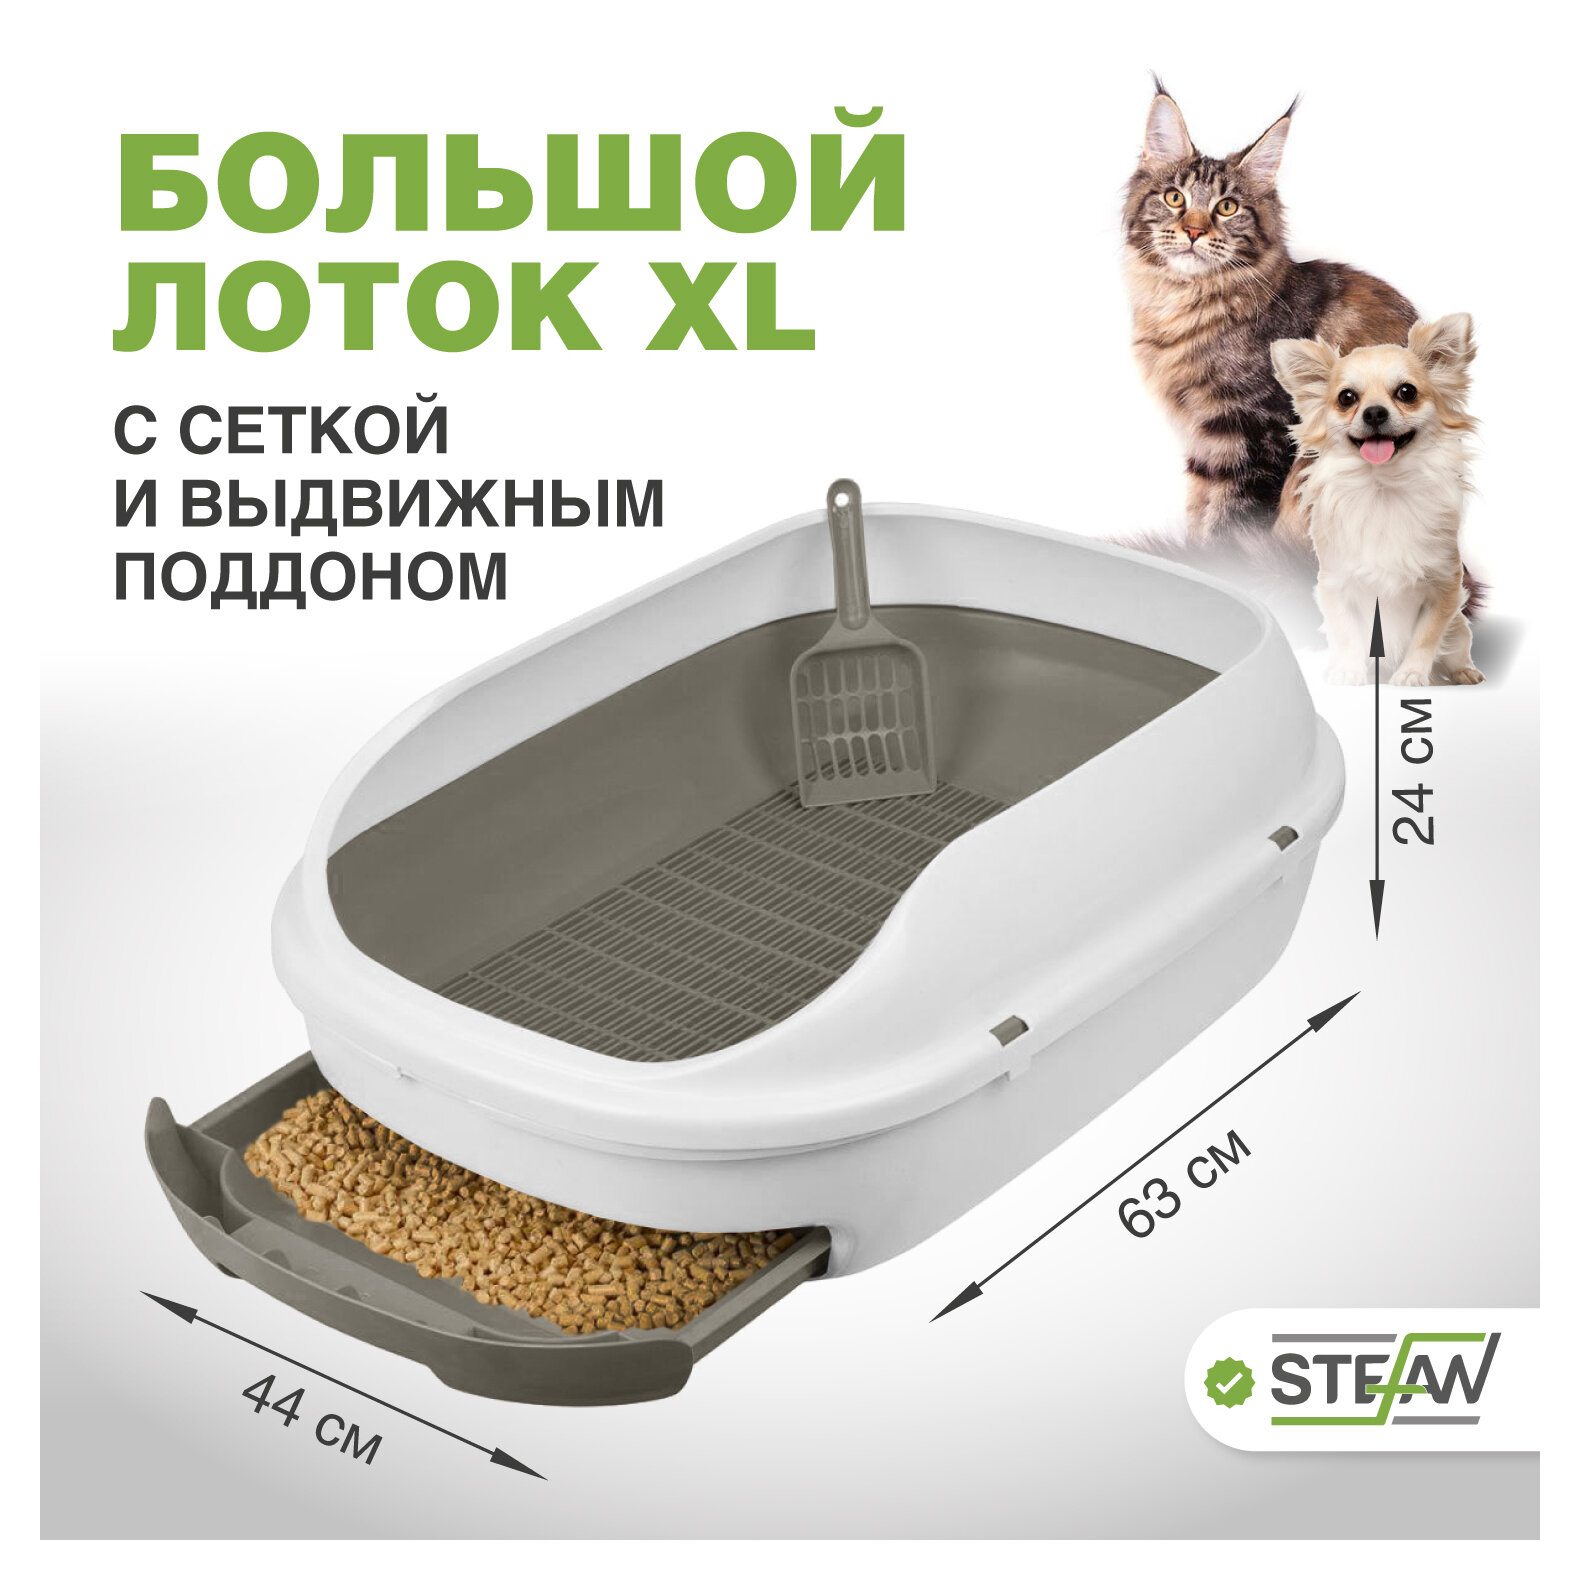 Большой лоток для кошек системный STEFAN (Штефан) с высокими бортами, сеткой и выдвижным поддоном, (ХL) 63х44х24, серый BP2901